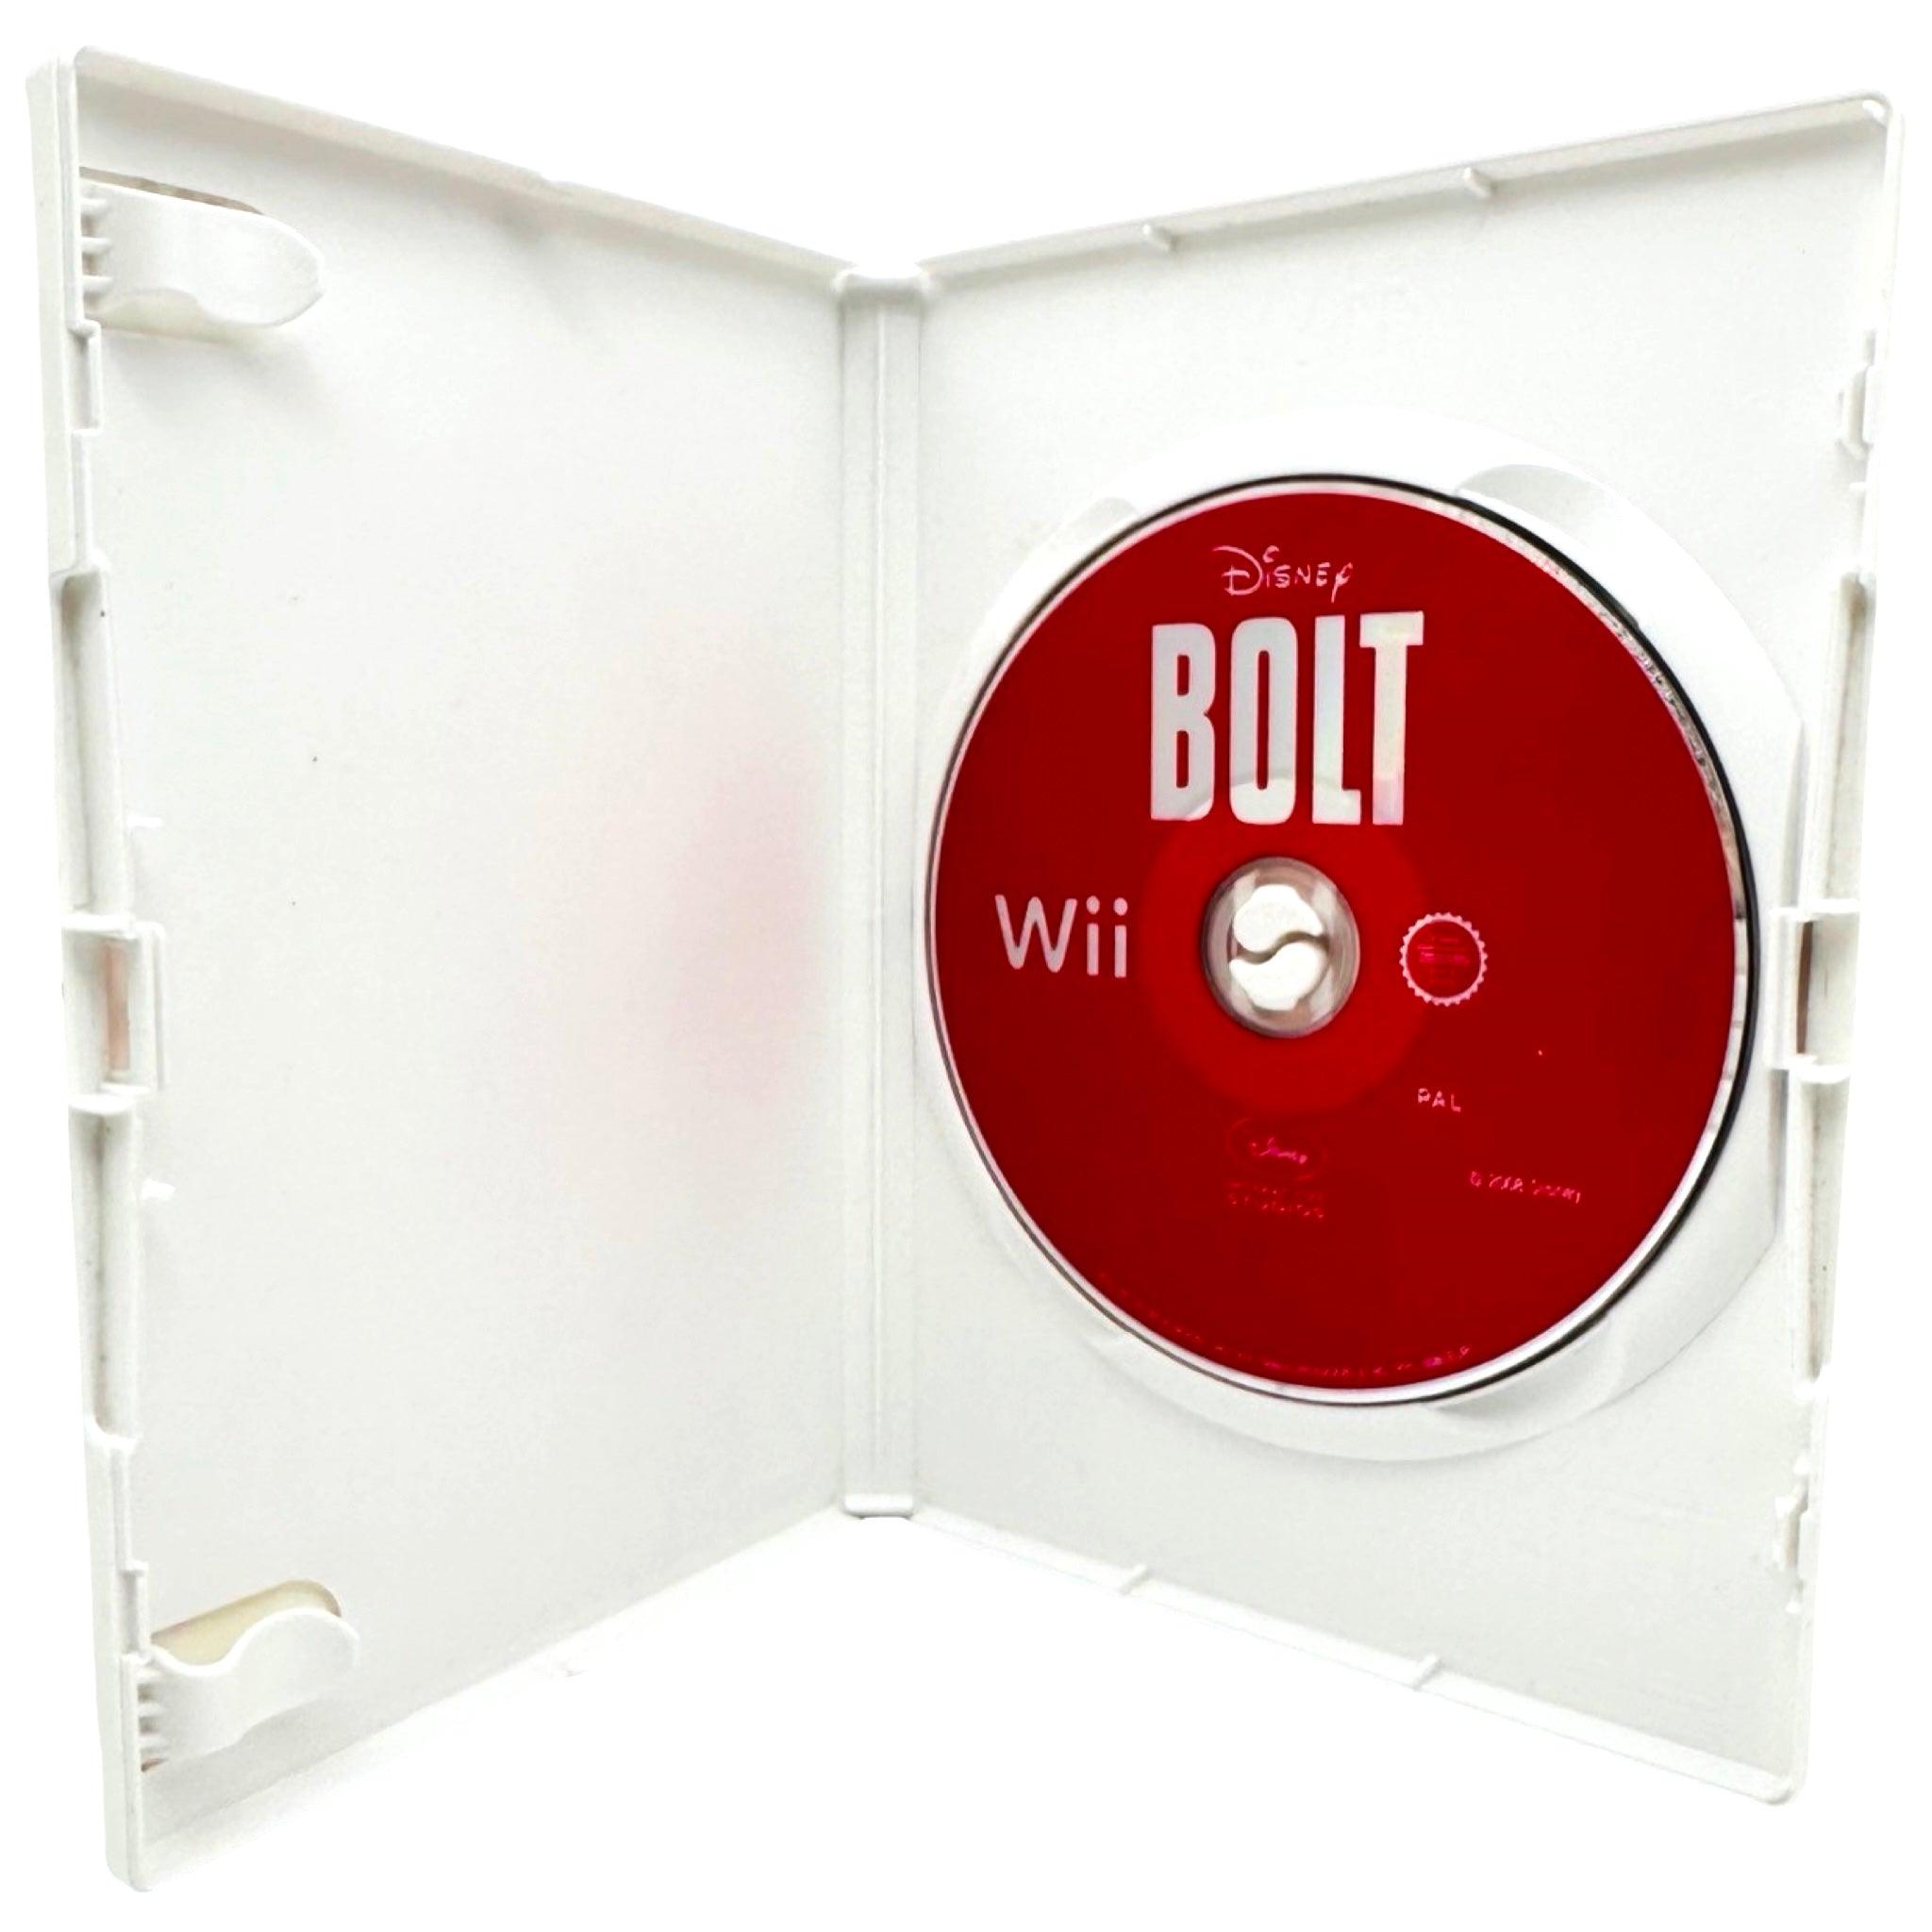 Wii: Bolt - RetroGaming.no